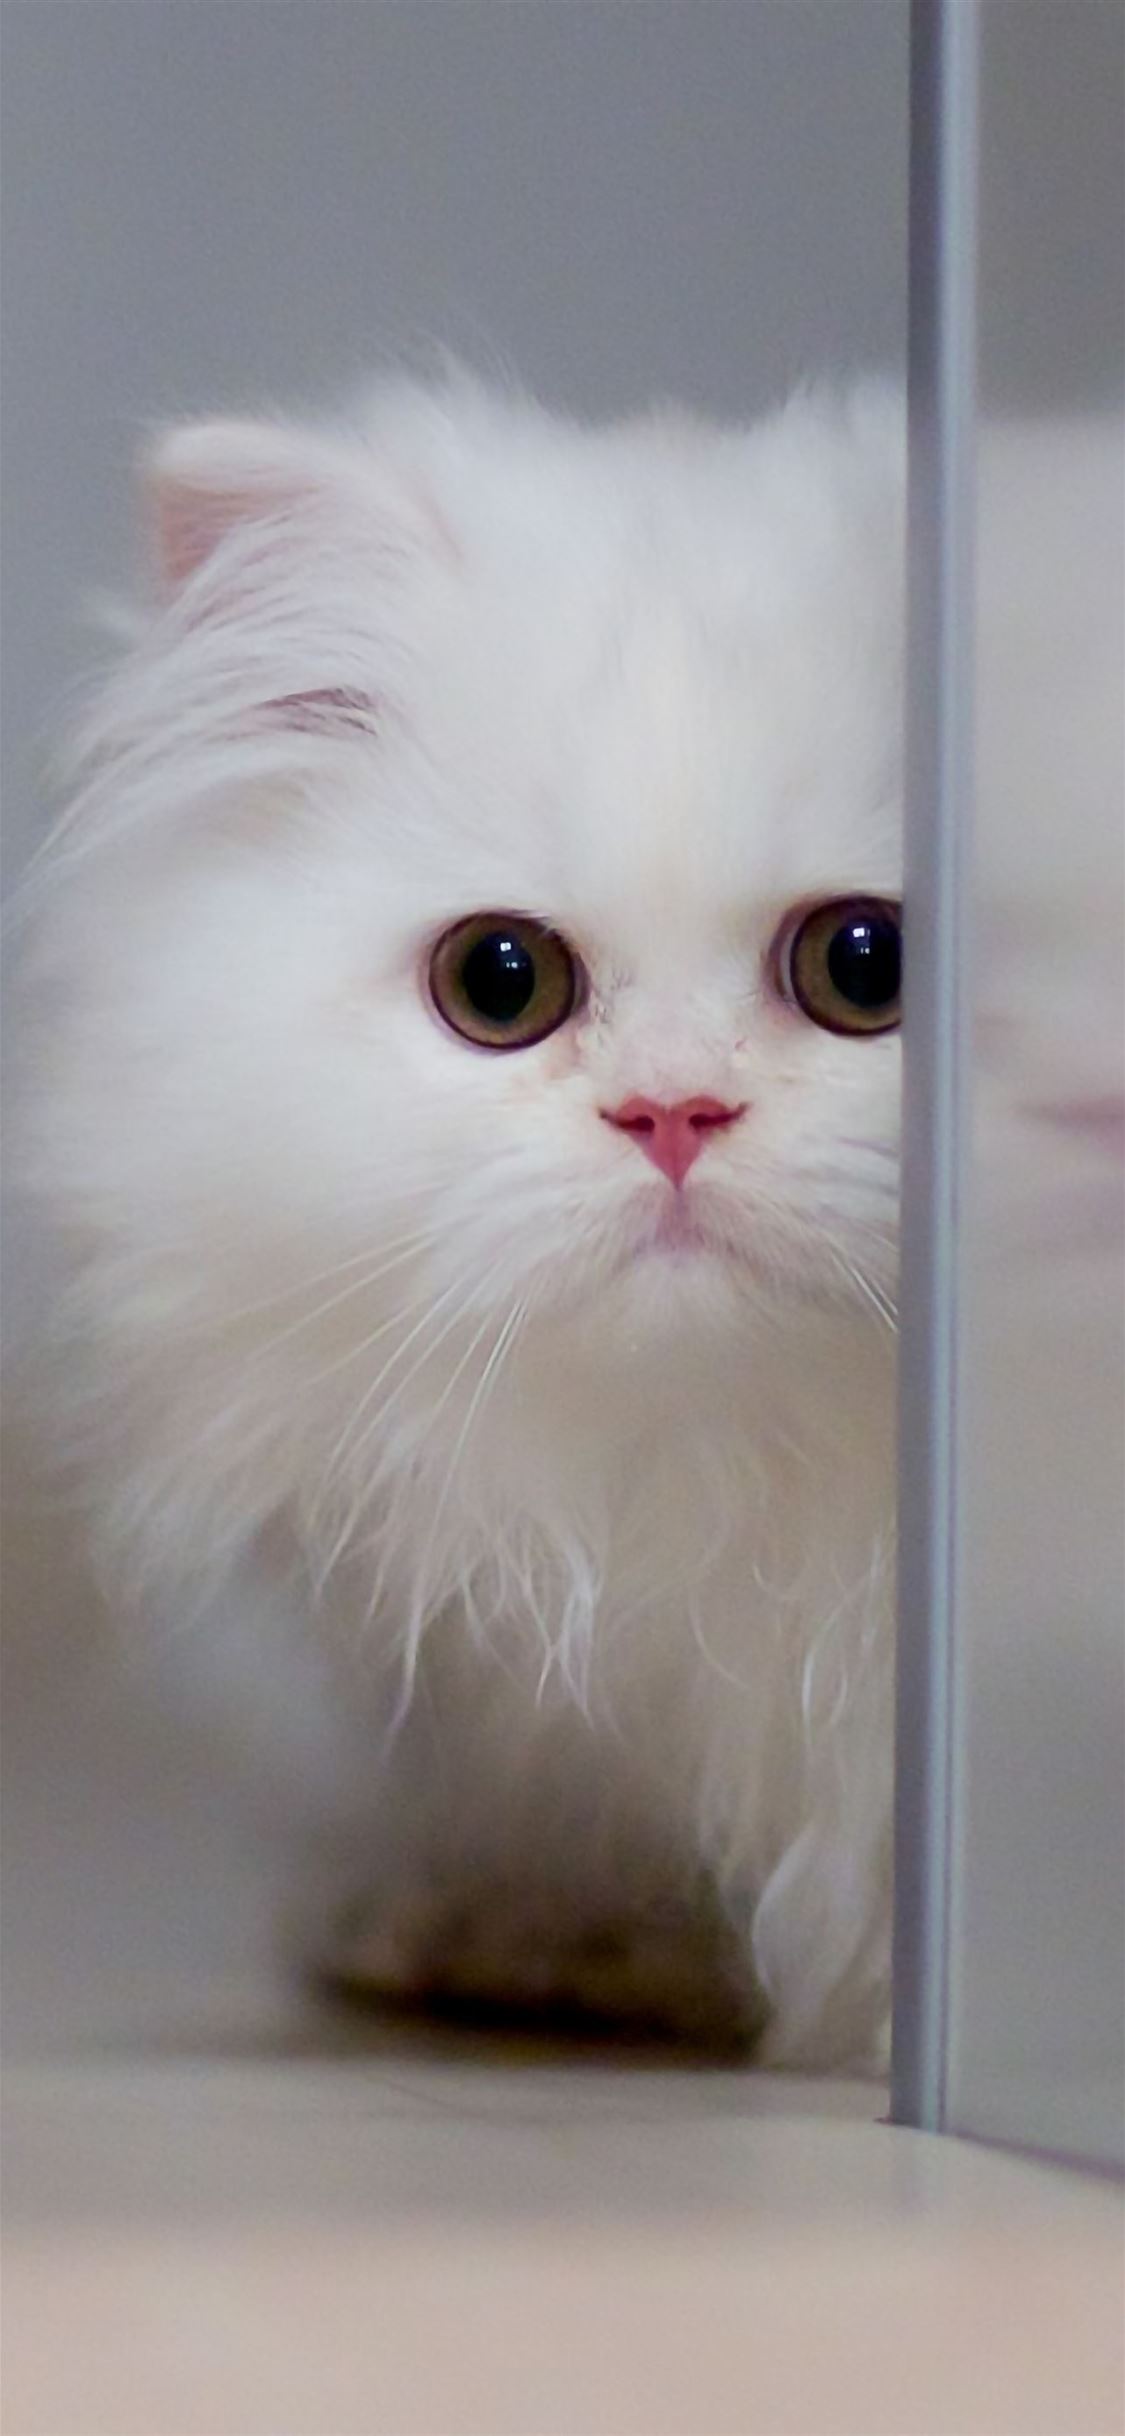 Cute White Cat iPhone wallpaper 